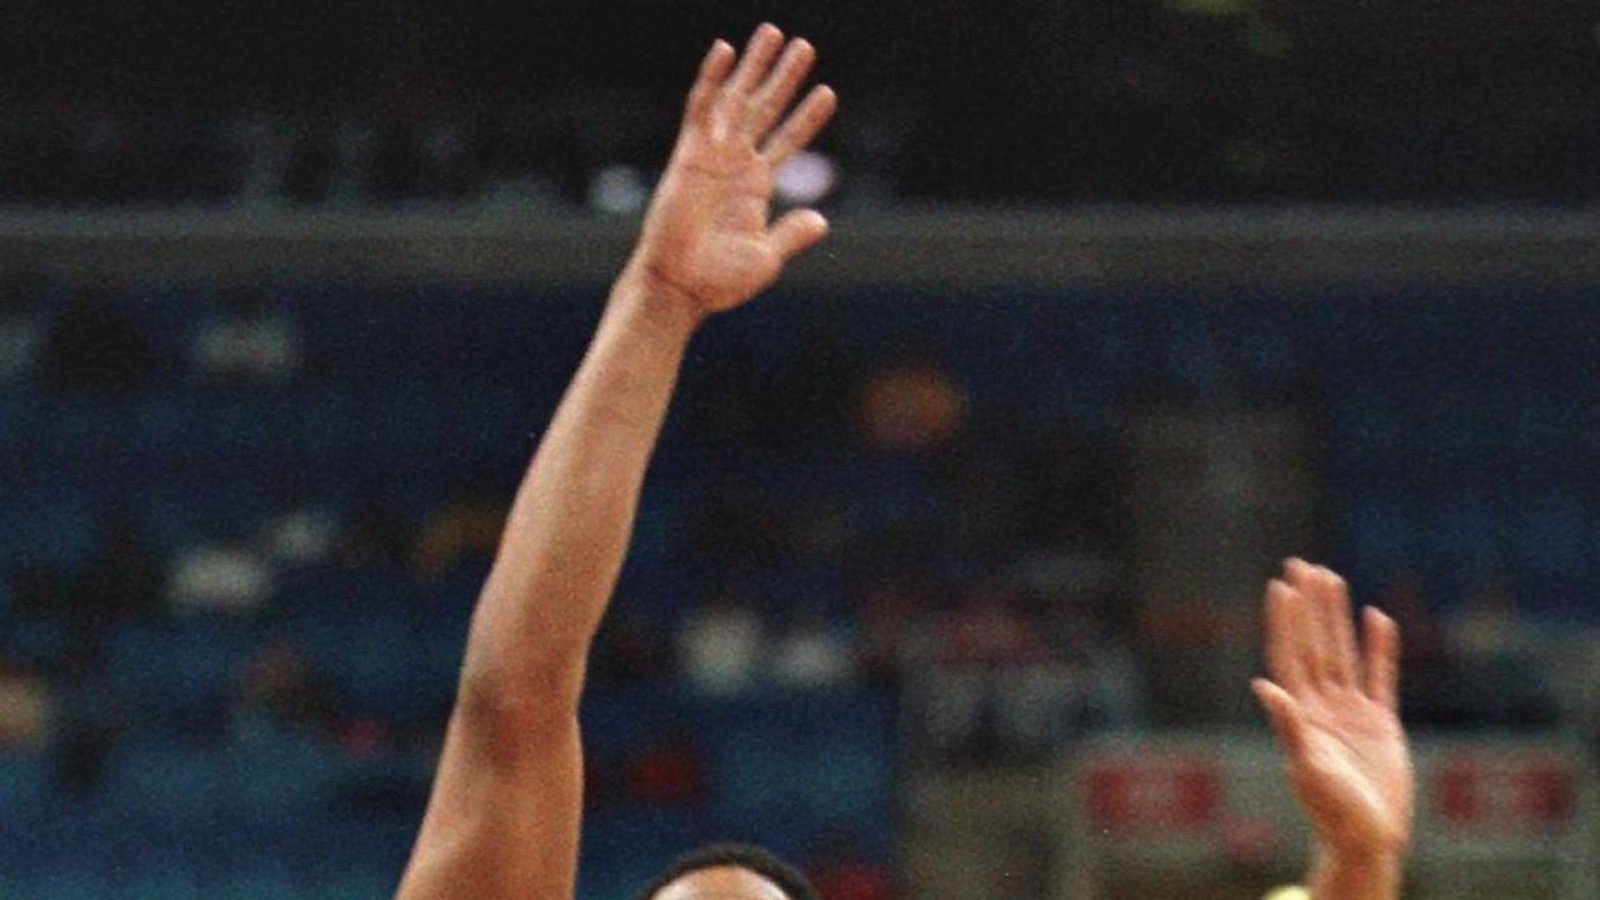 John Stockton Von  1984 bis 2003 war der Star-Aufbauspieler ausschließlich für die Utah Jazz in der NBA aktiv und galt  als beständiger und zuverlässiger Aufbauspieler und Passgeber.  2009 wurde er in die Basketball Hall of Fame aufgenommen. Von 2013 bis 2015 spielte sein Sohn Michael beim Bundesligisten Riesen Ludwigsburg.Foto: dpa/David Maxwell